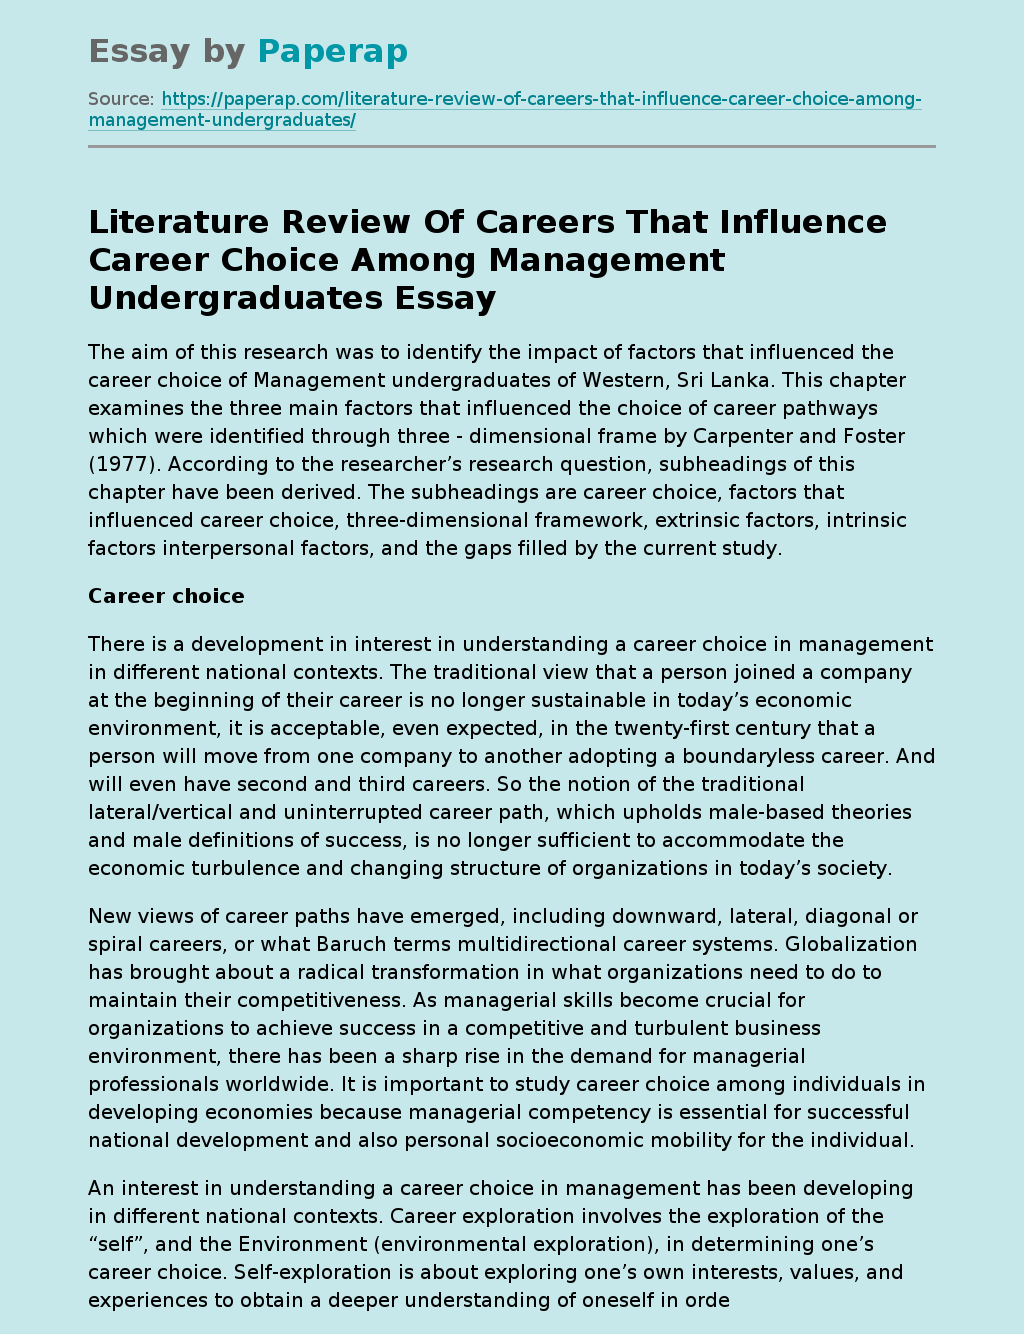 Influential Careers for Management Undergraduates